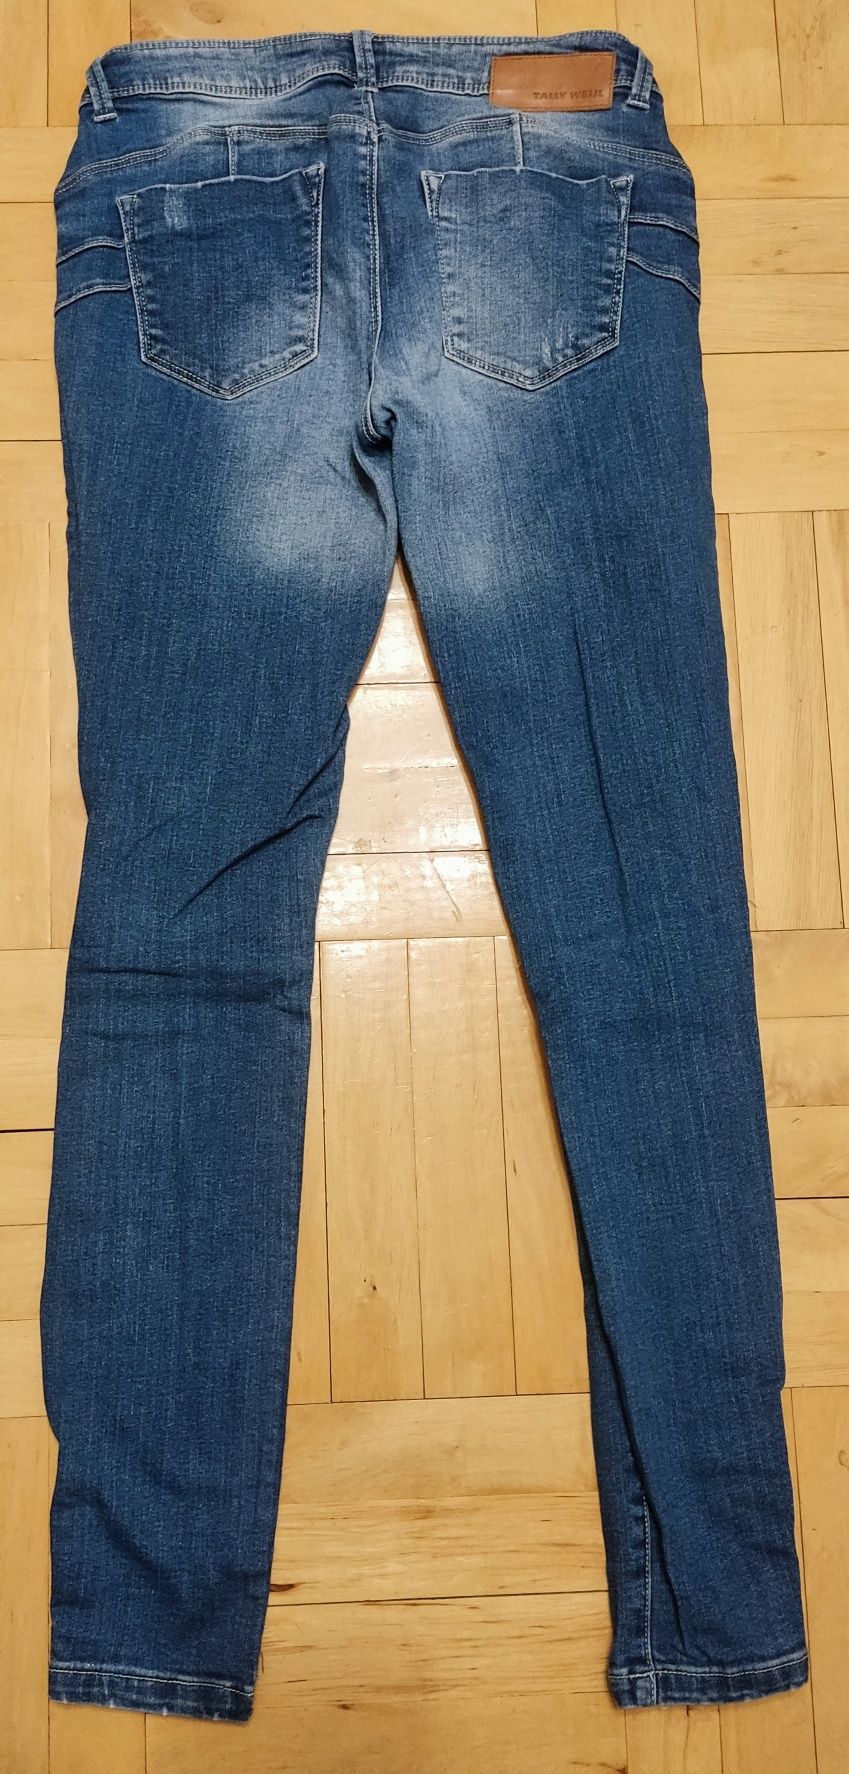 Spodnie jeansowe jeansy z przetarciami dziurami na kolanach